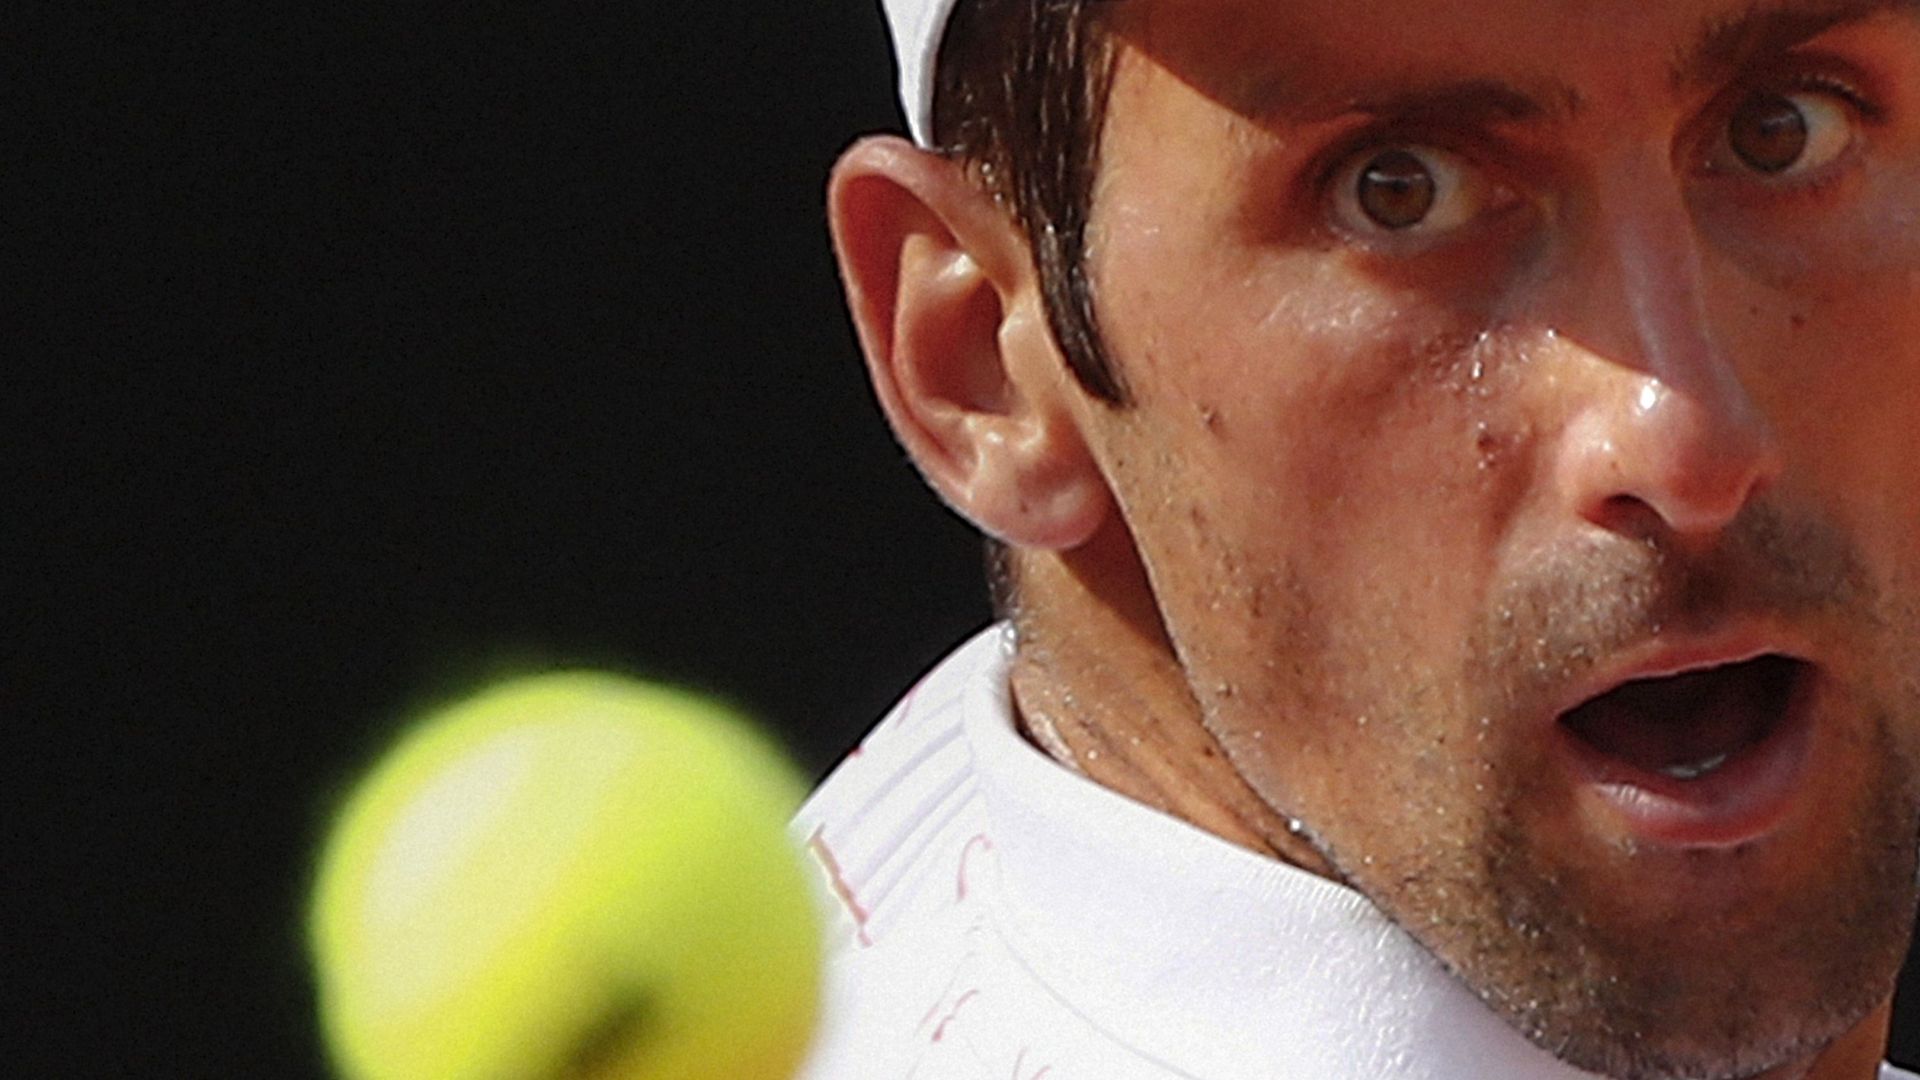 Novak Djokovic a peiné samedi face à l'Allemand Dominik Koepfer (6-3, 4-6, 6-3) pour rallier les demi-finales du Masters 1000 de Rome